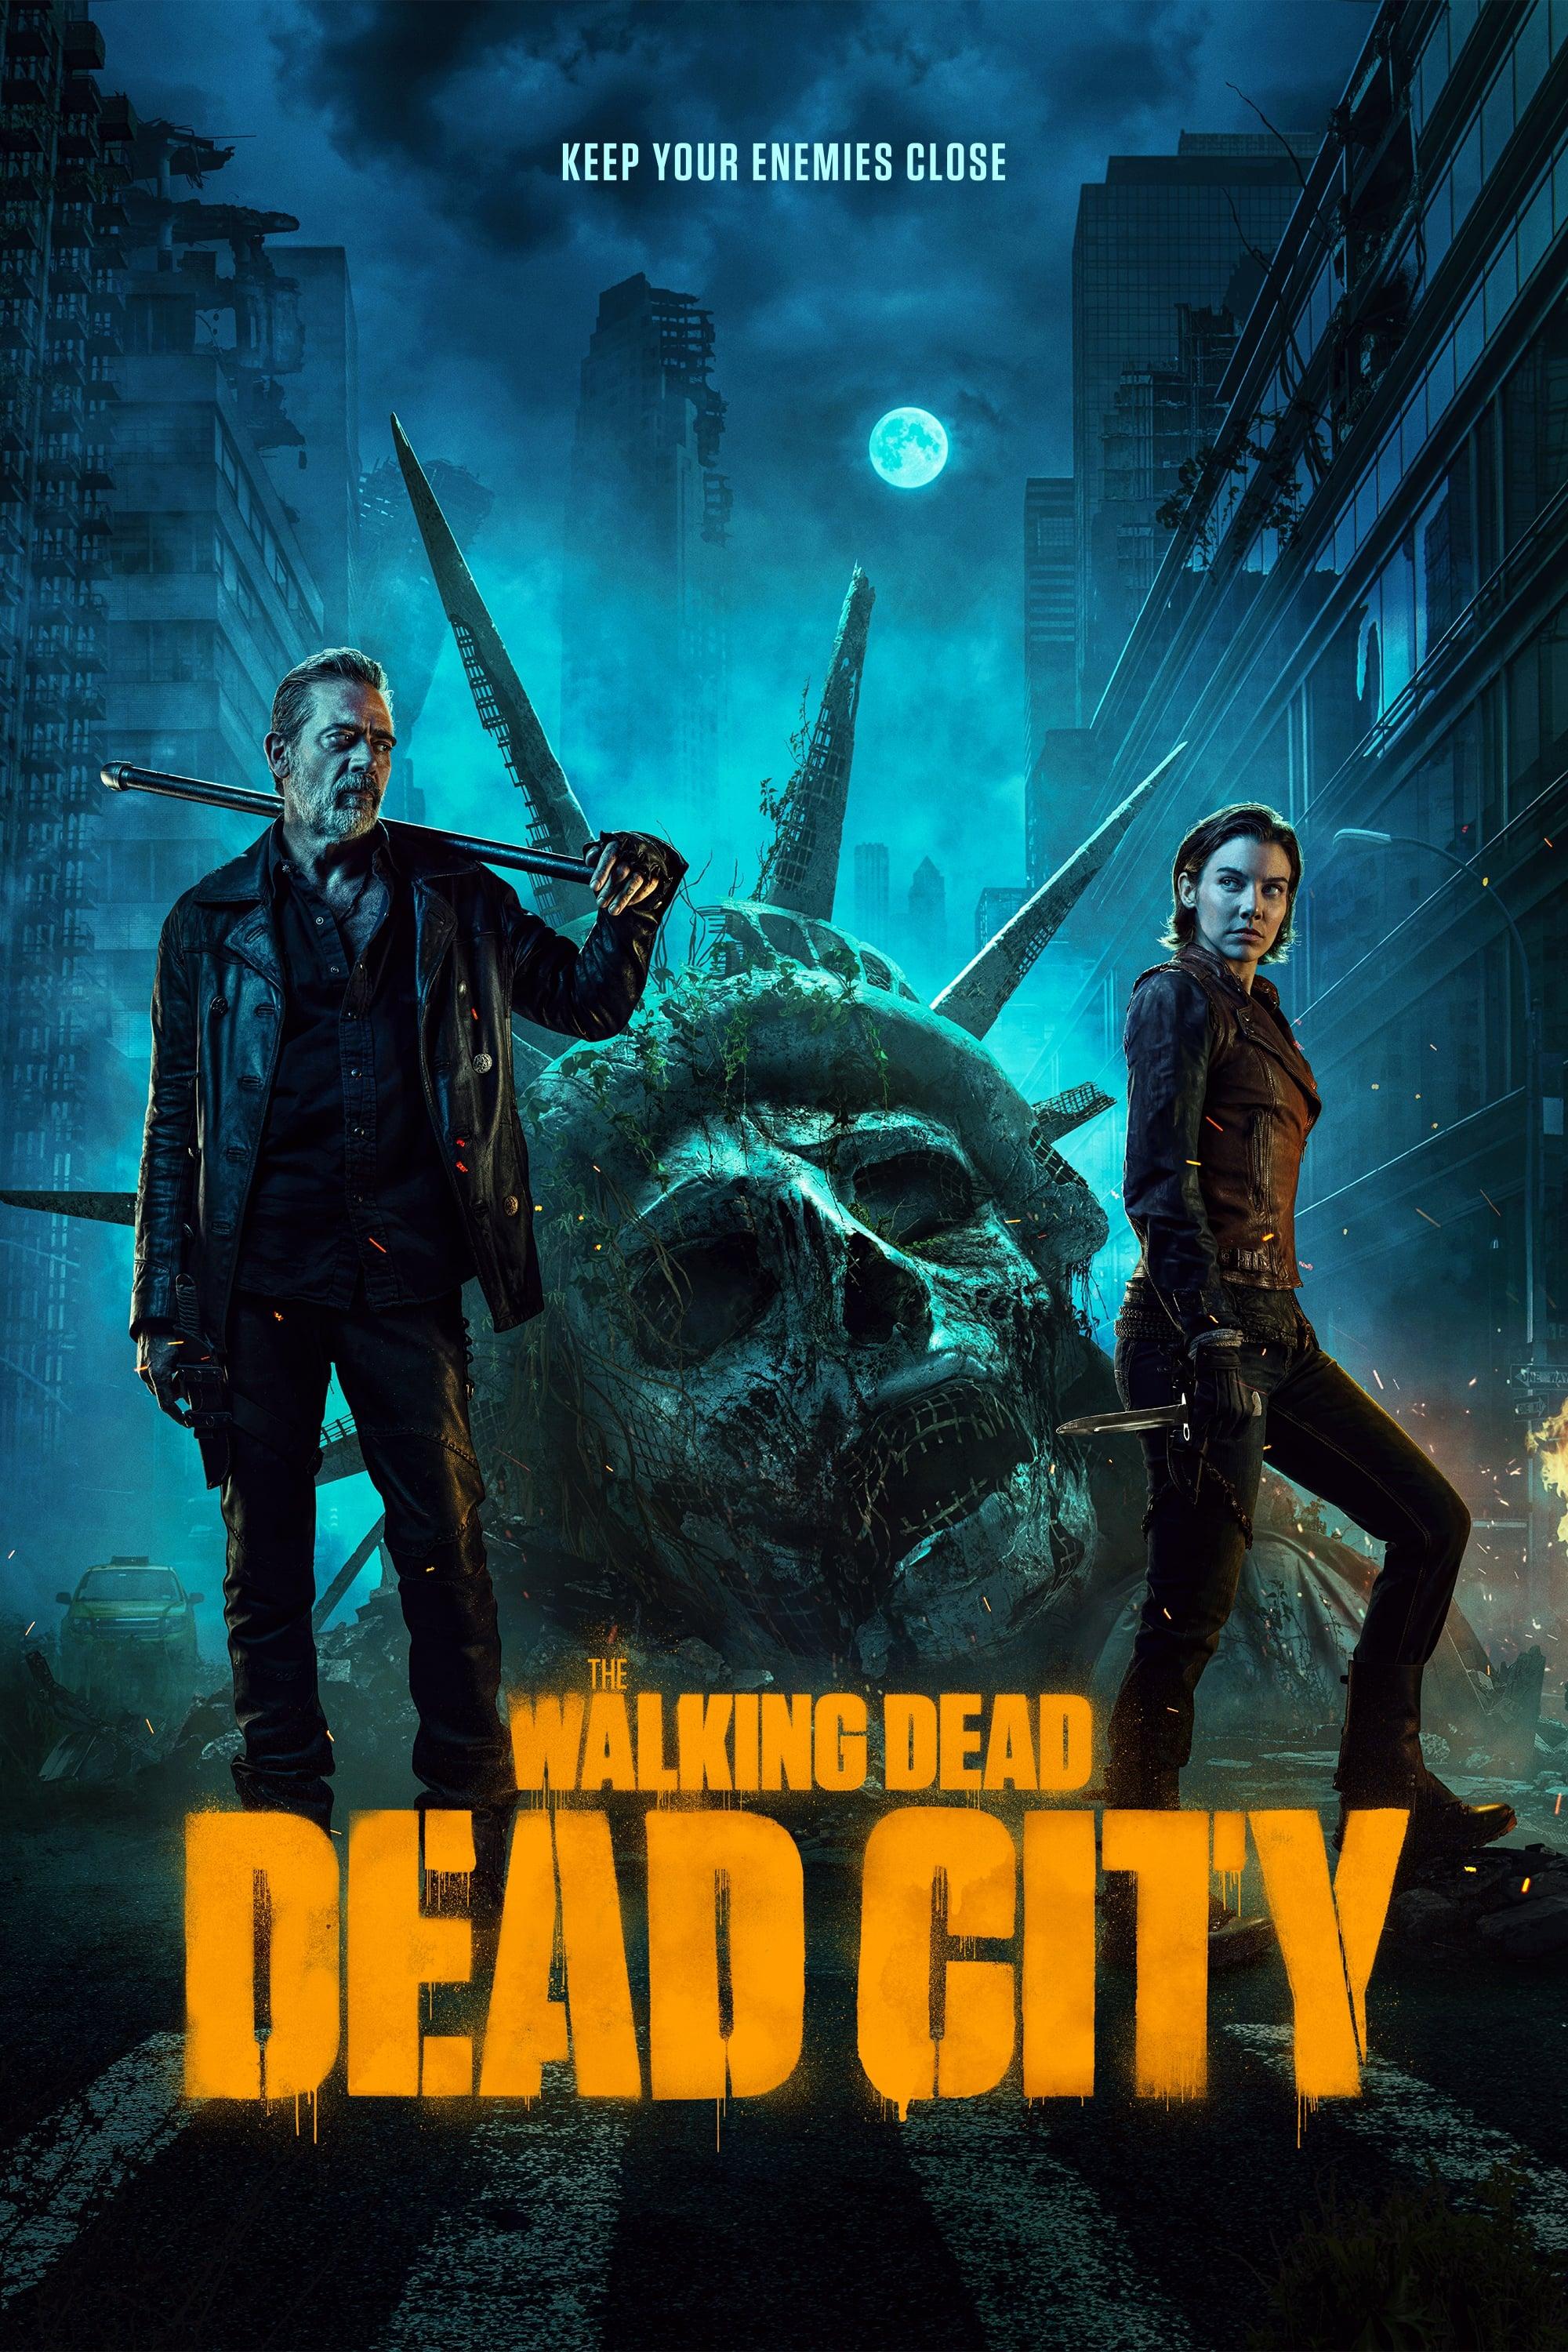 The Walking Dead: Dead City poster